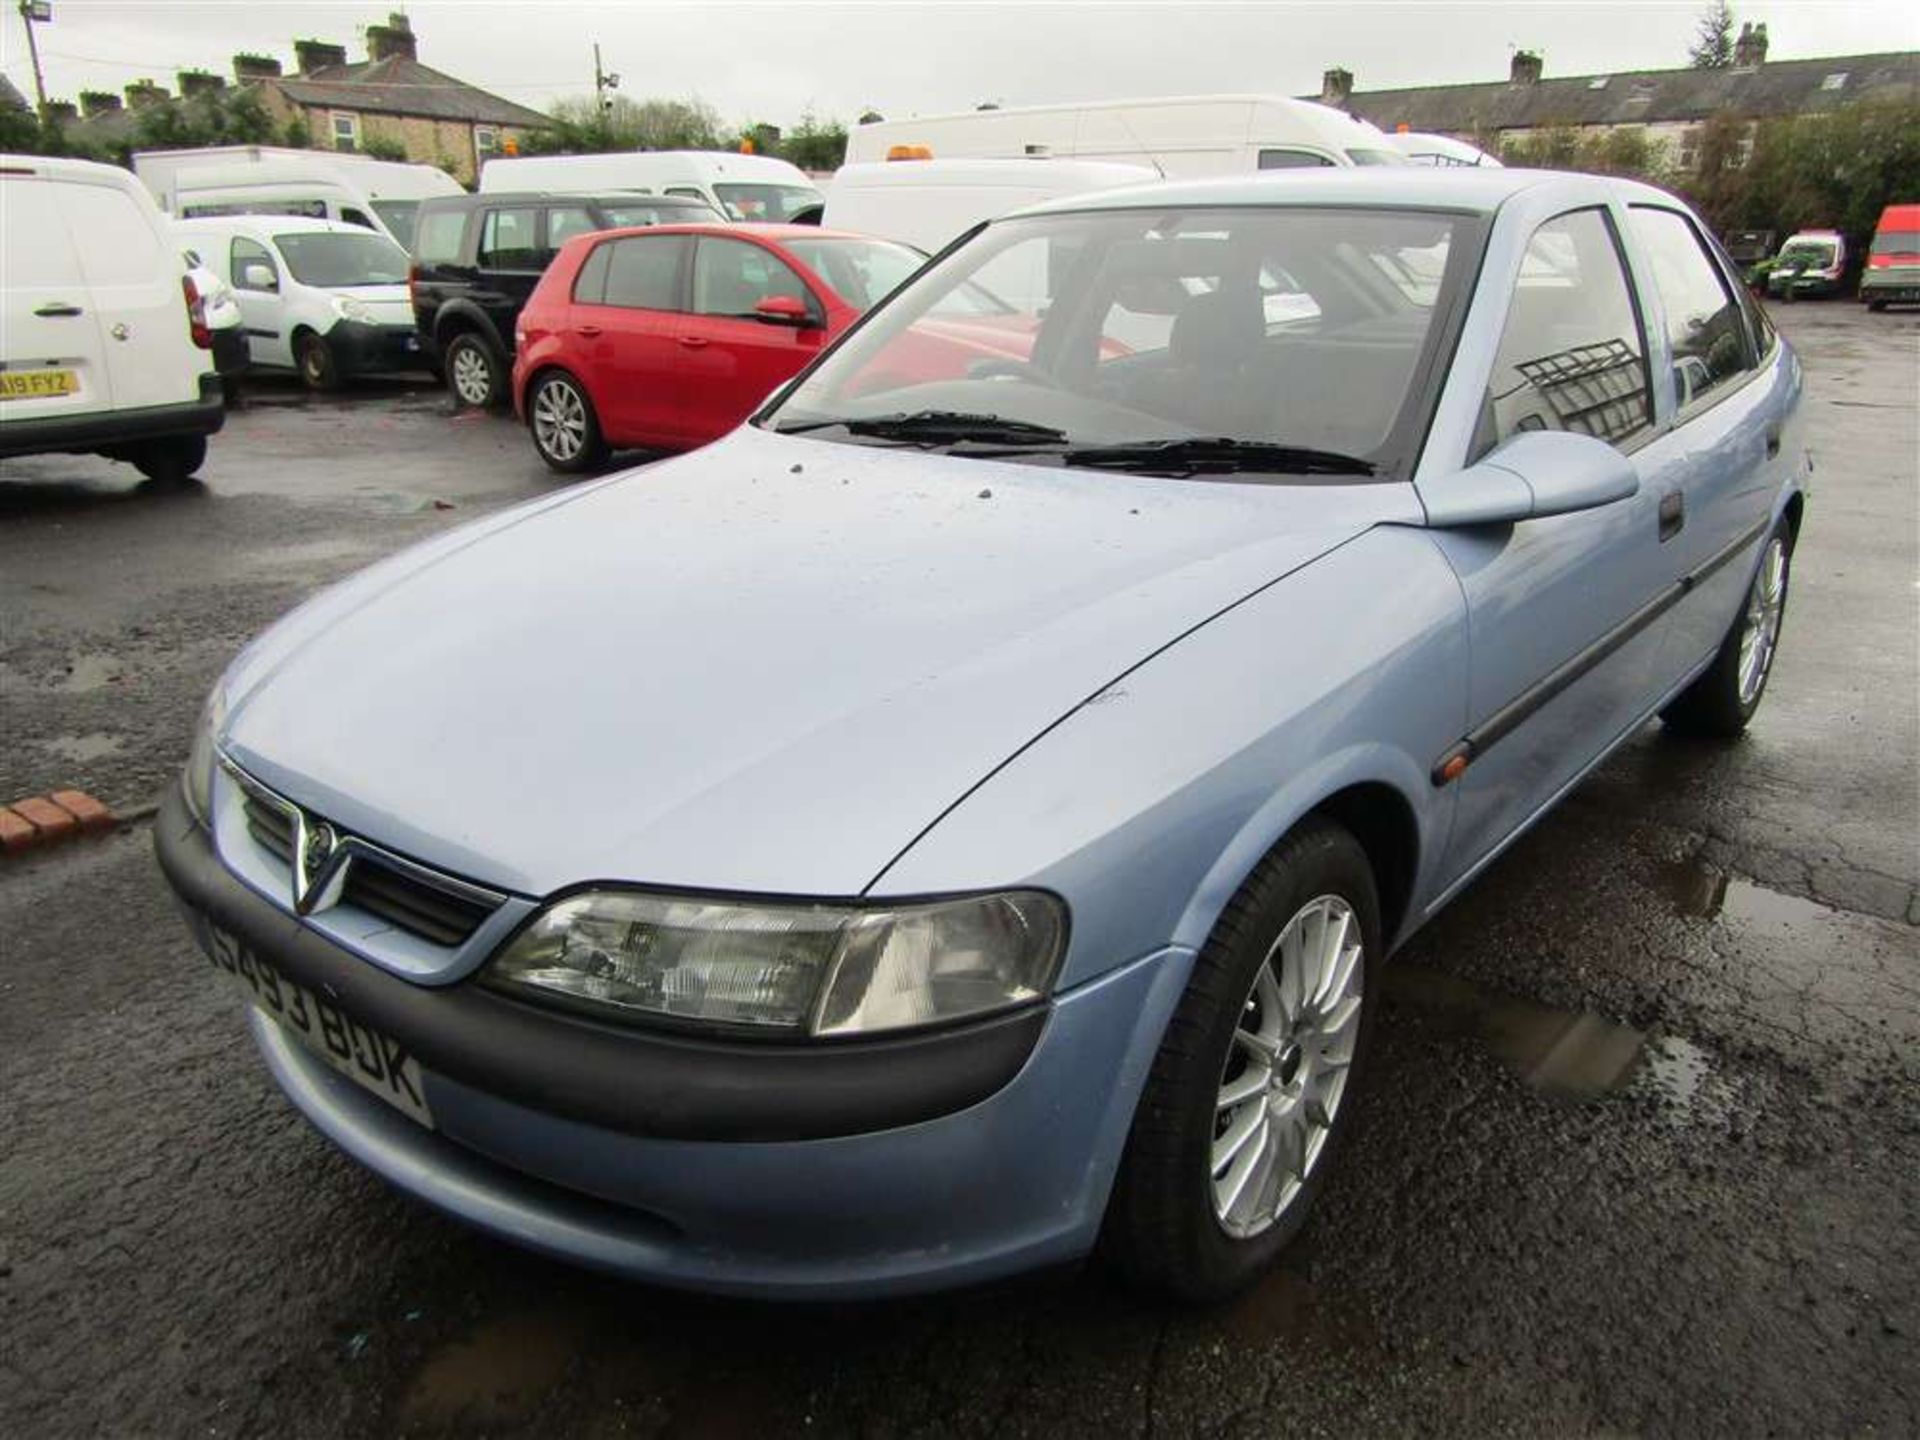 1998 S reg Vauxhall Vectra Envoy Auto - Image 2 of 6